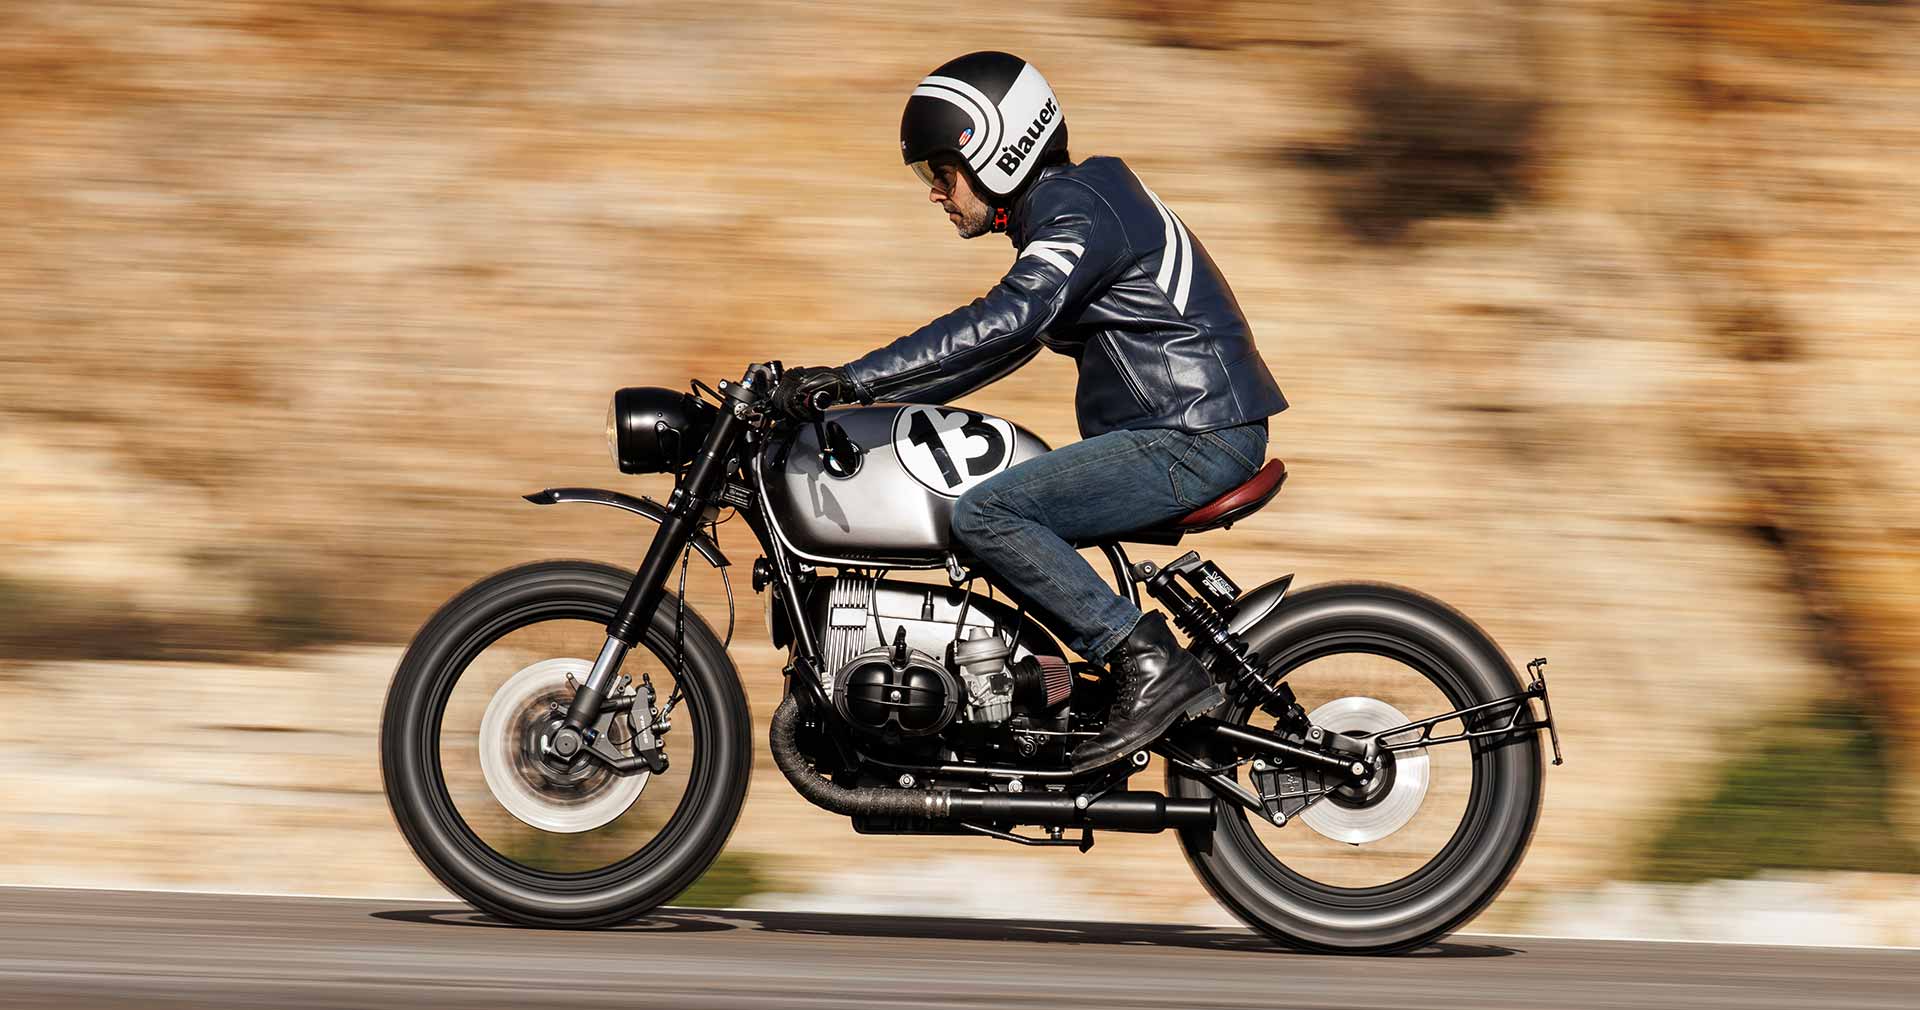 crd131 - moto segura para viajes - cafe racer dreams